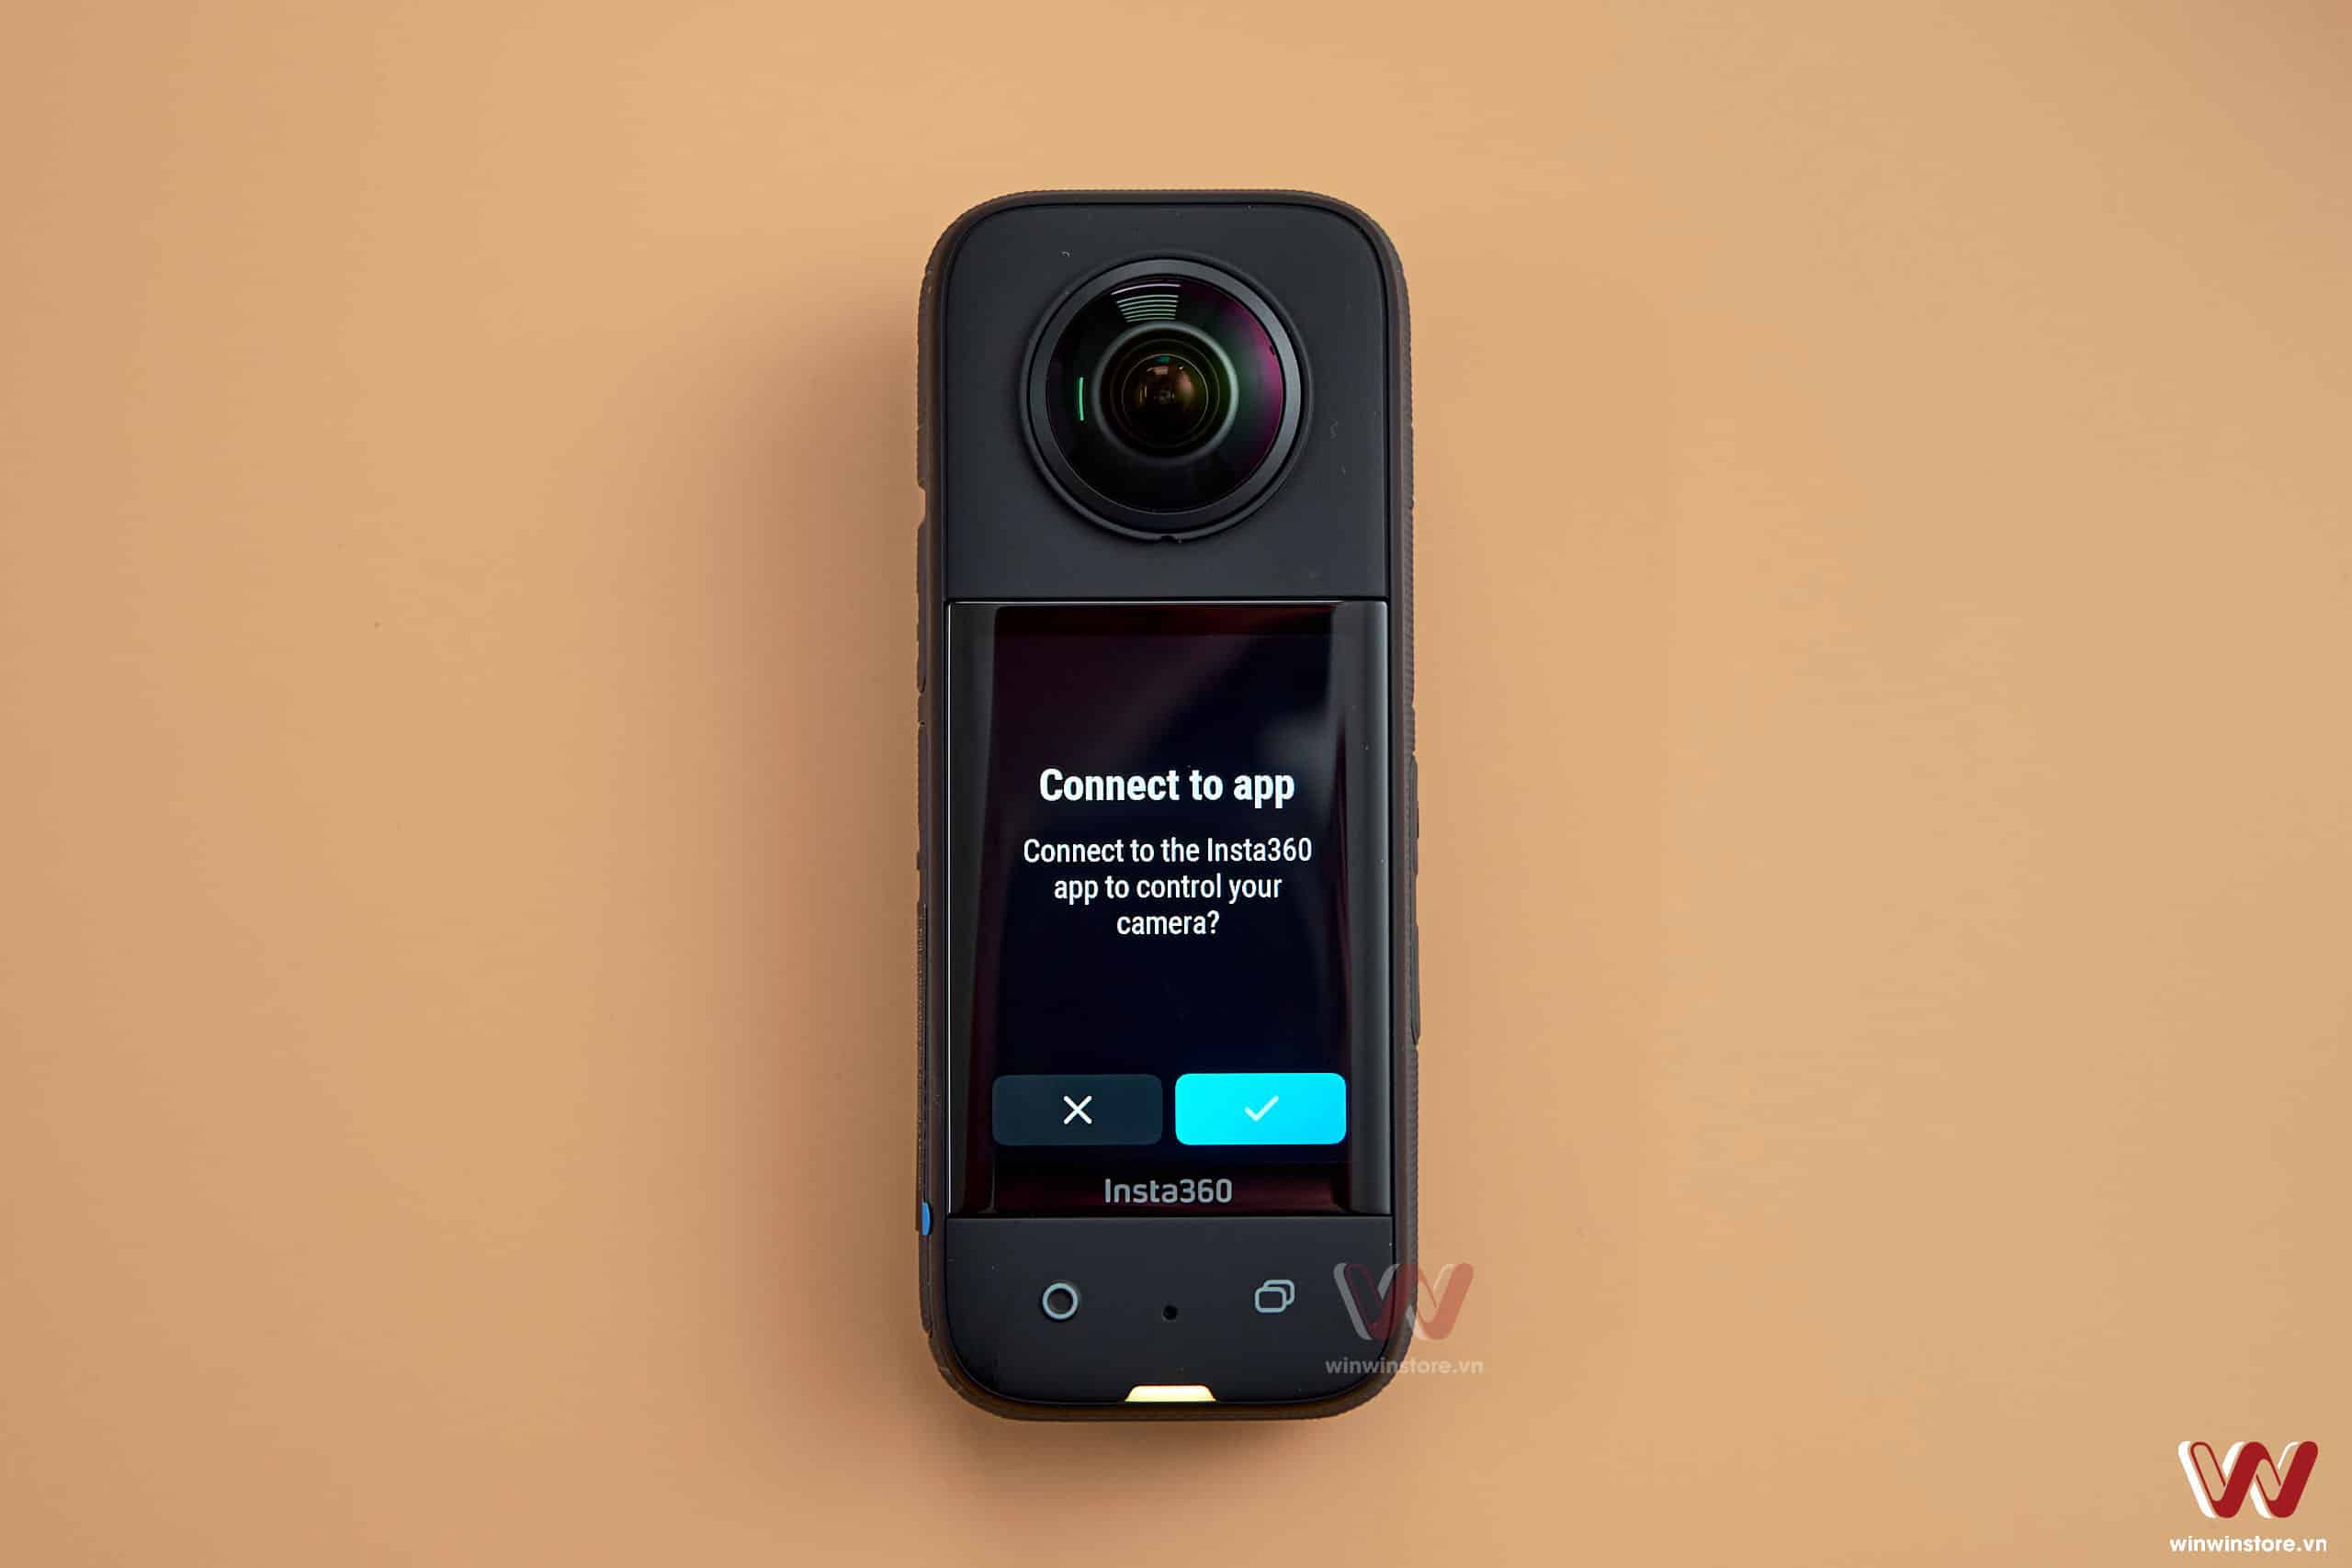 Hướng dẫn kết nối camera Insta360 X3 với smartphone của bạn